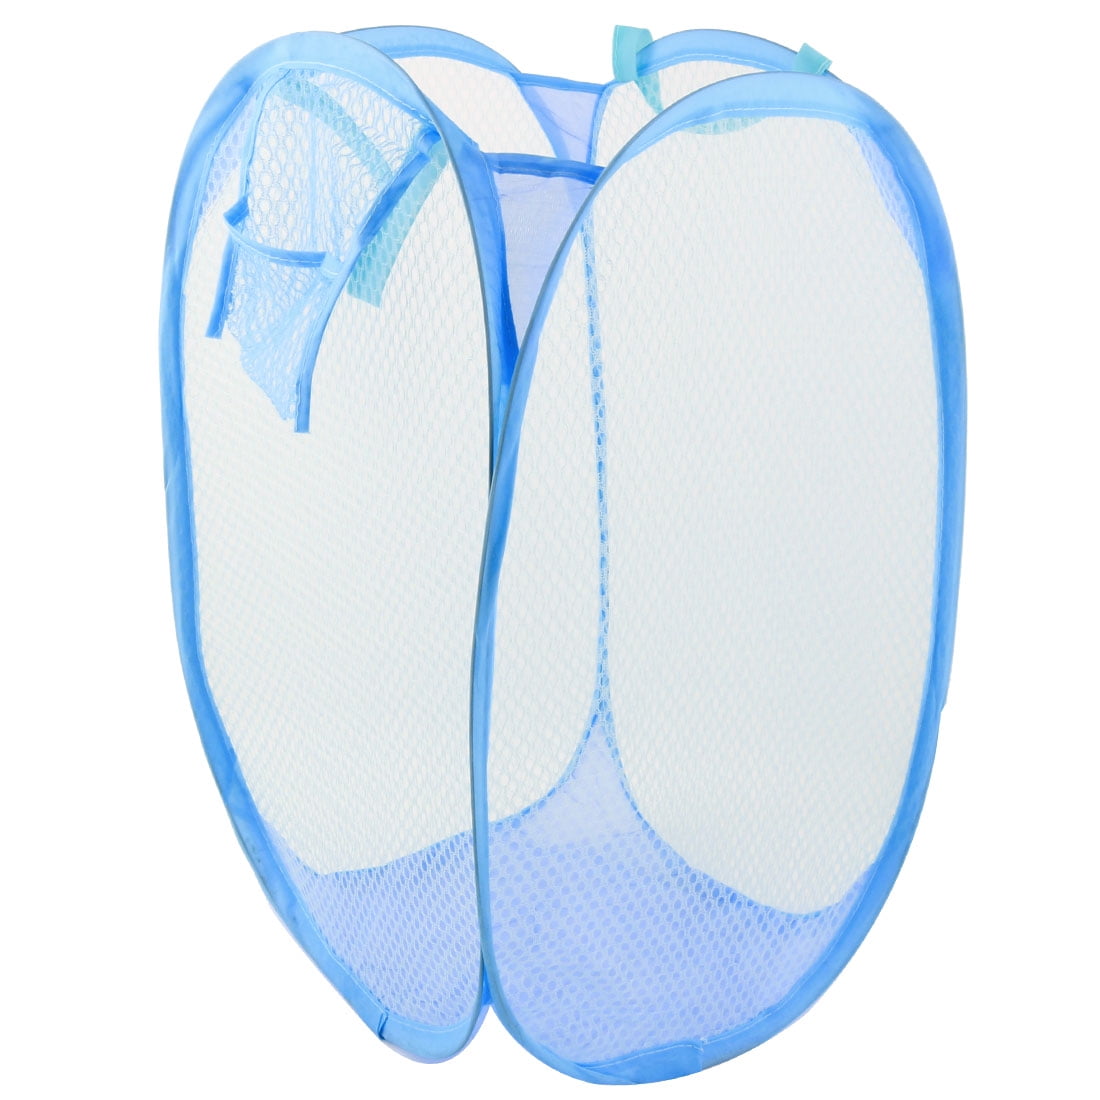 Laundary Bag Foldable Pop Up Mesh Washing Laundry Basket Bag ToyStorage light blue 